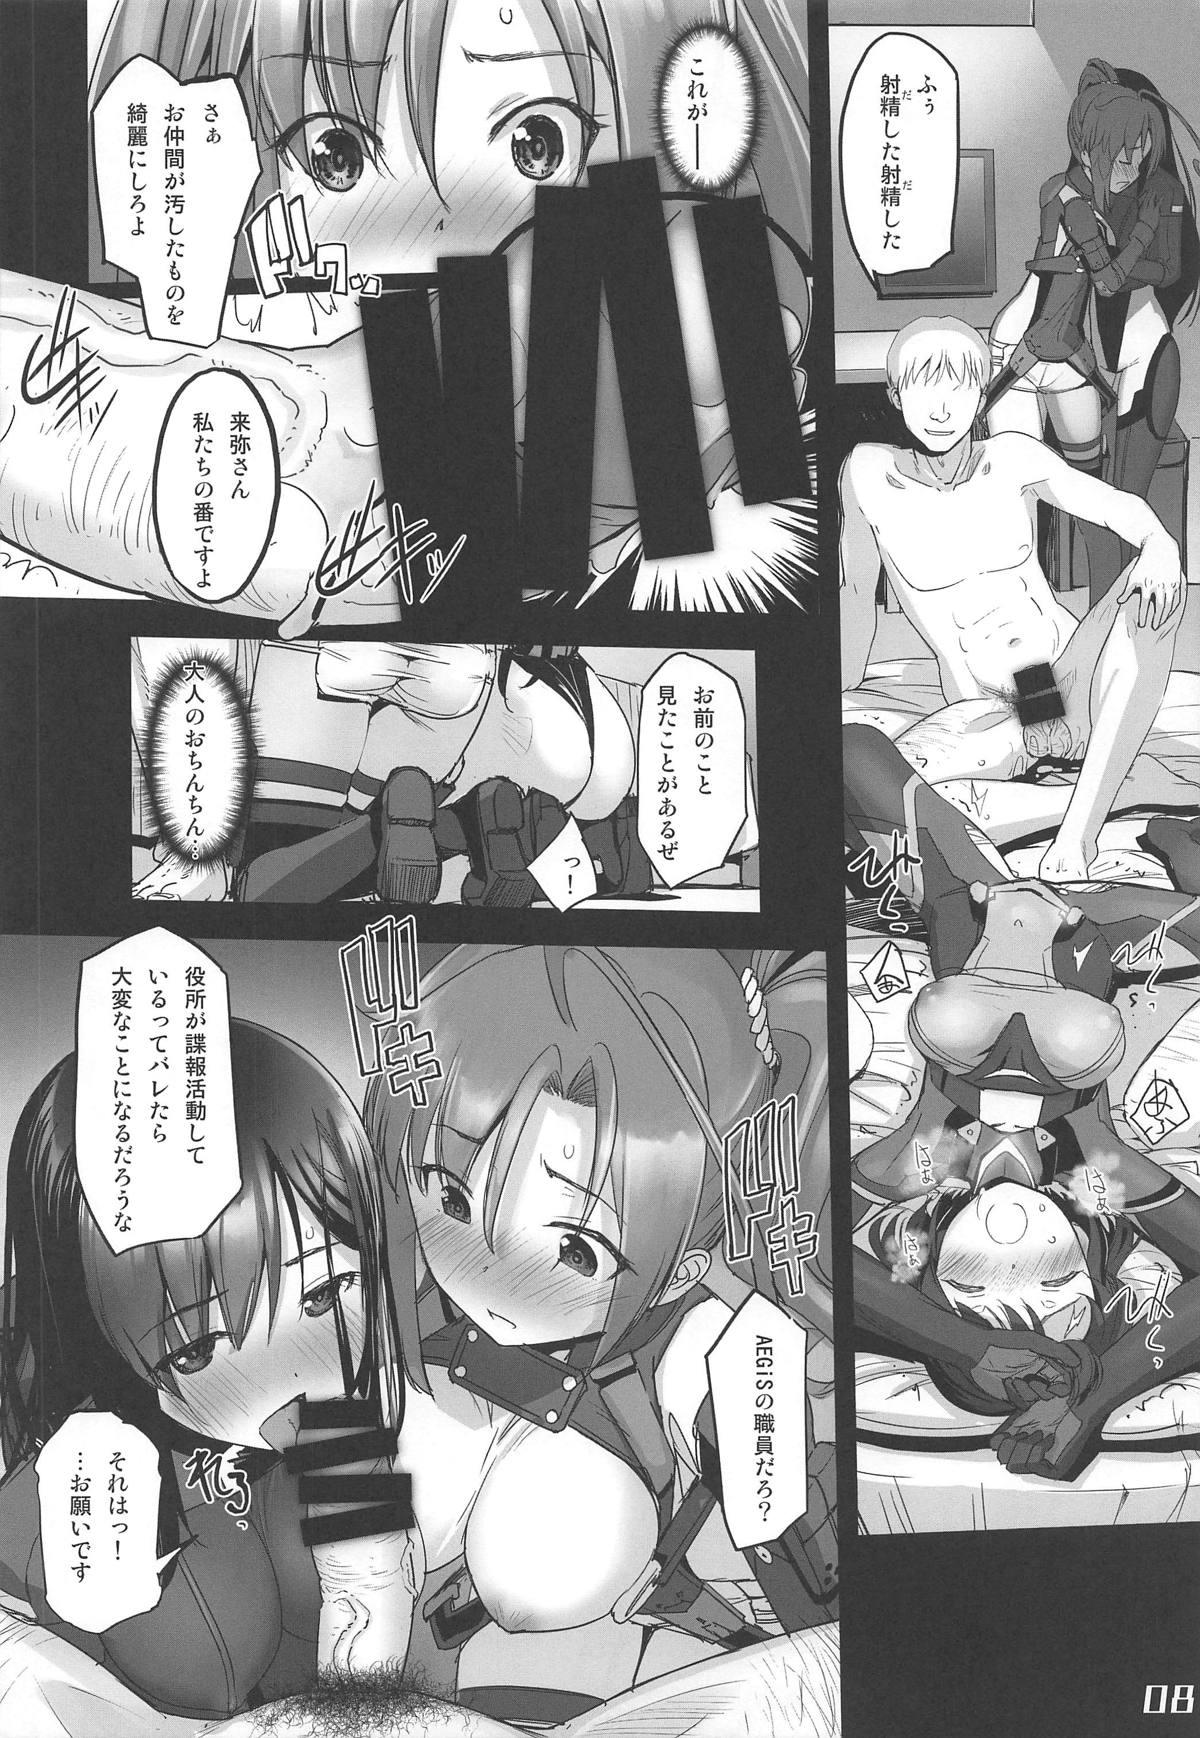 Satin Narukozaka Seisakusho Engiroku 3 "Team: NPtS Hen" - Alice gear aegis Ruiva - Page 7